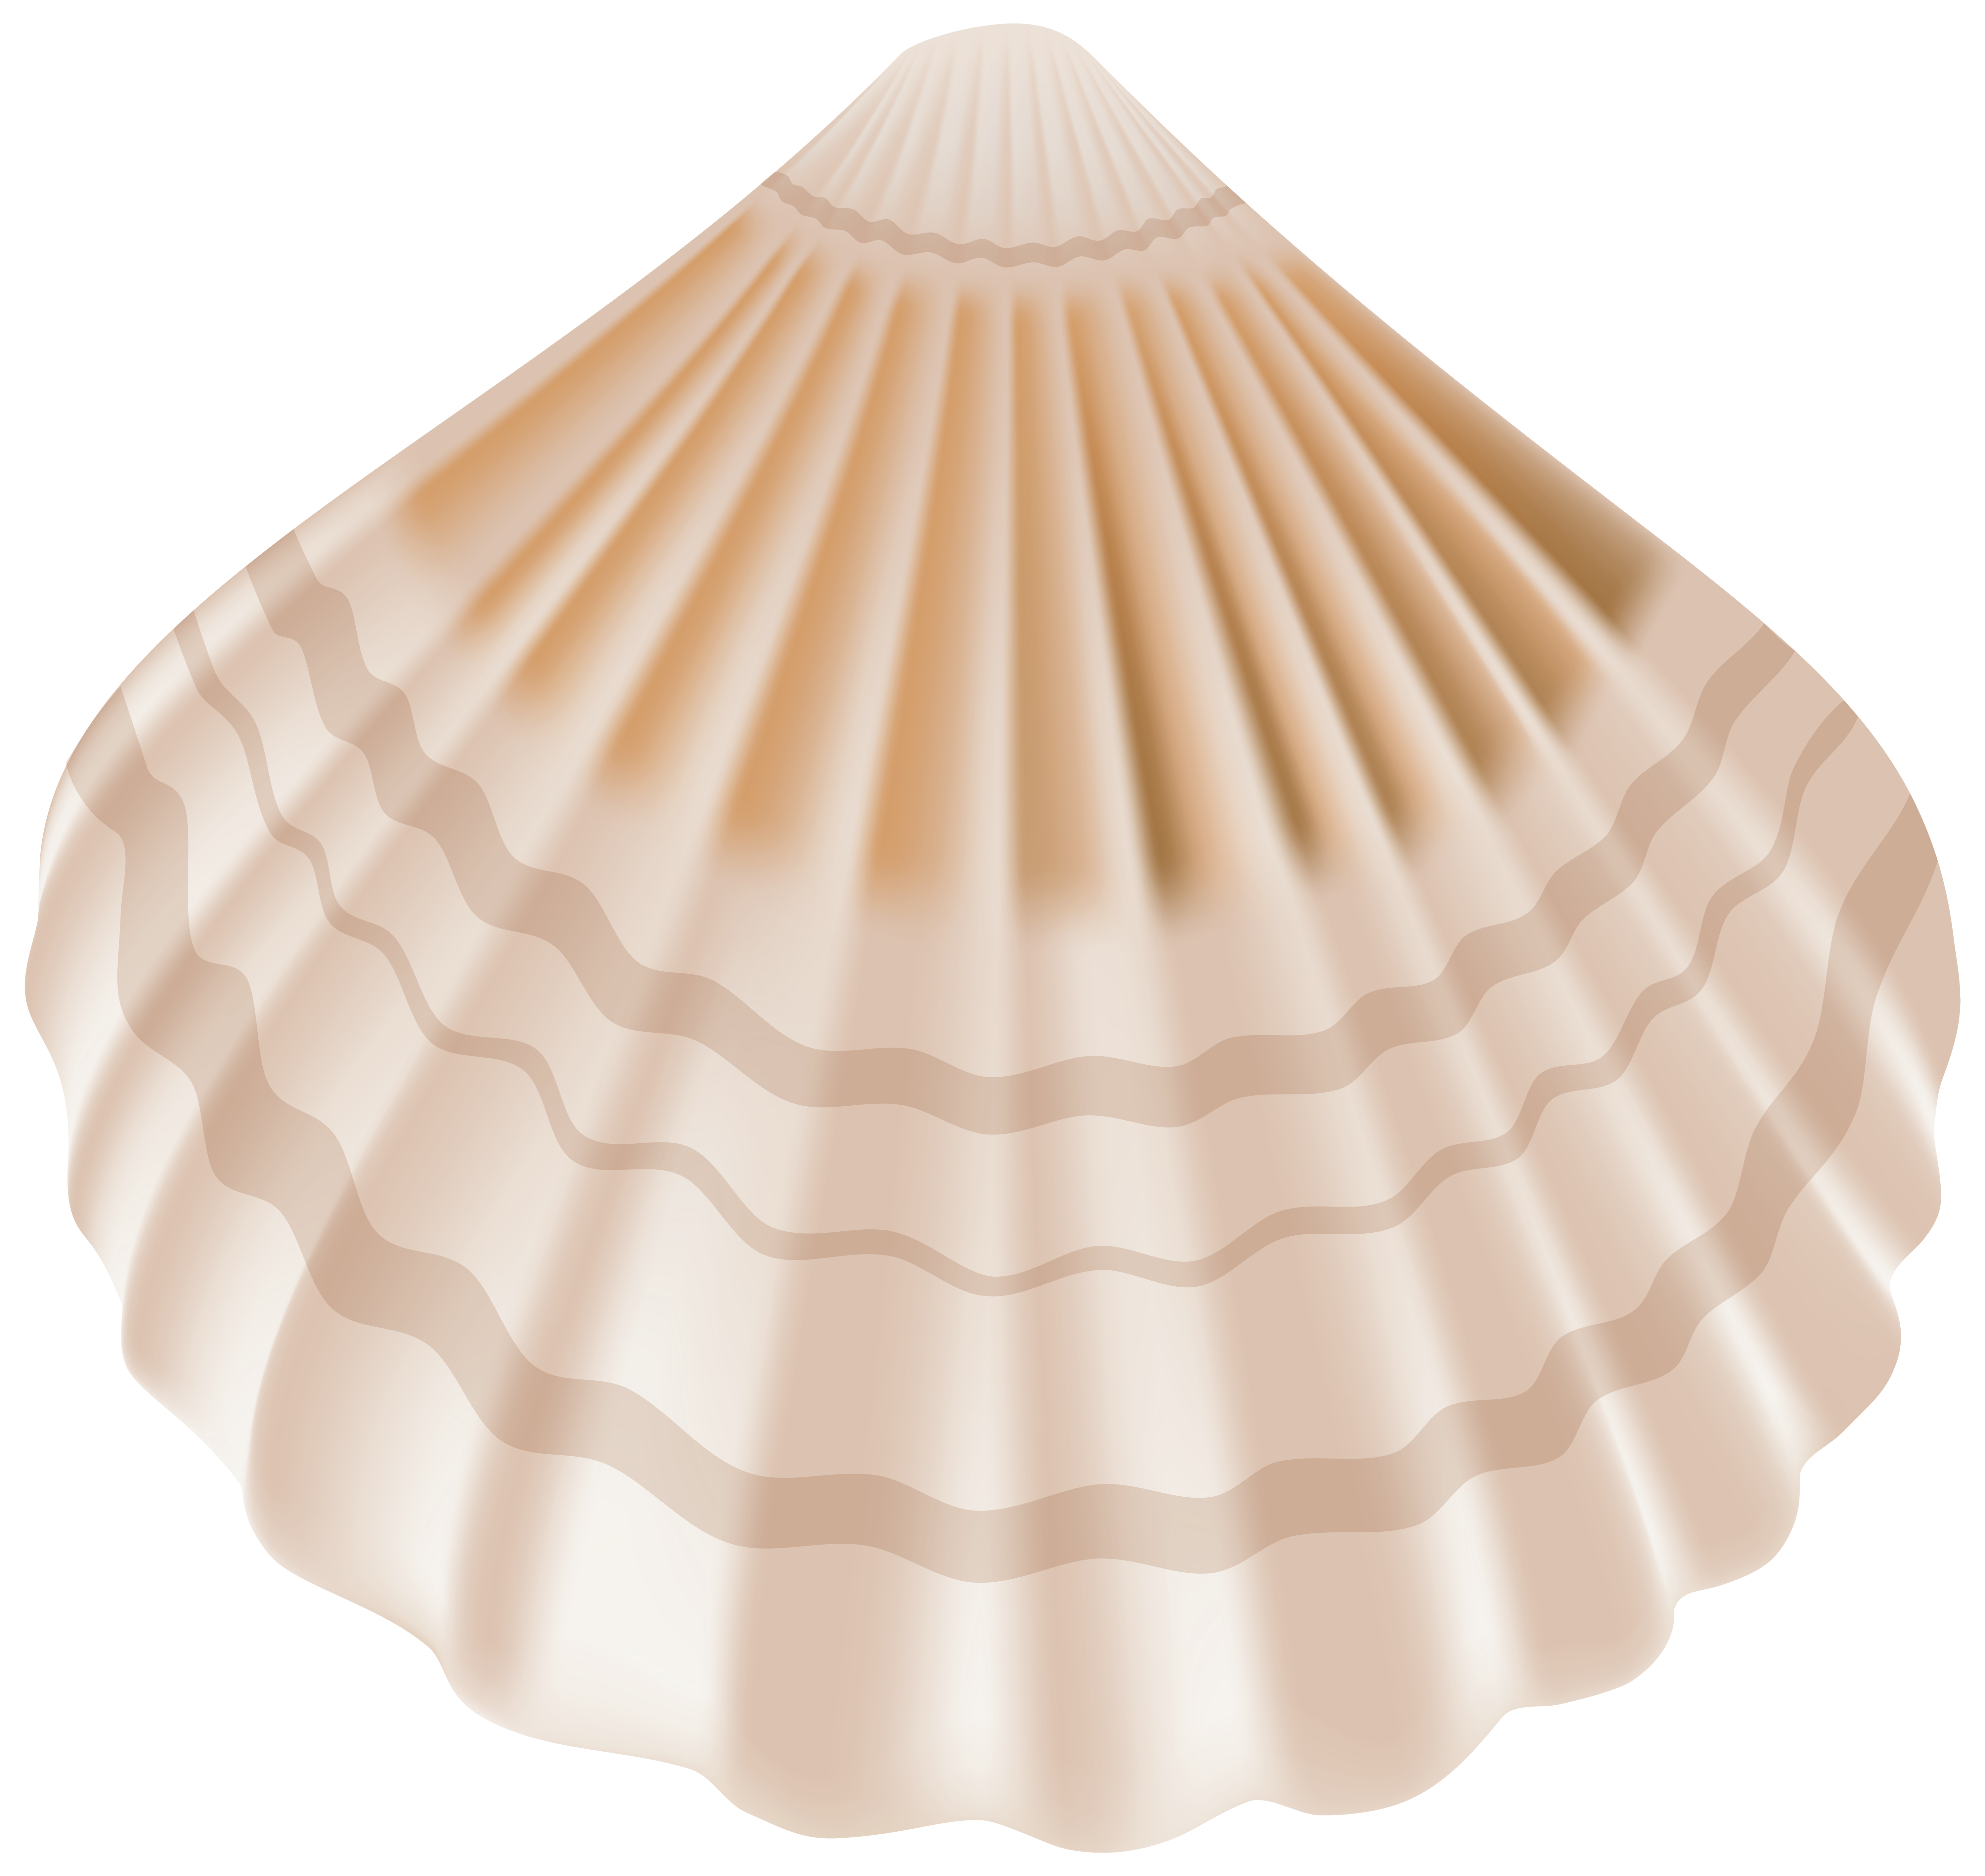 seashells clipart blue seashell